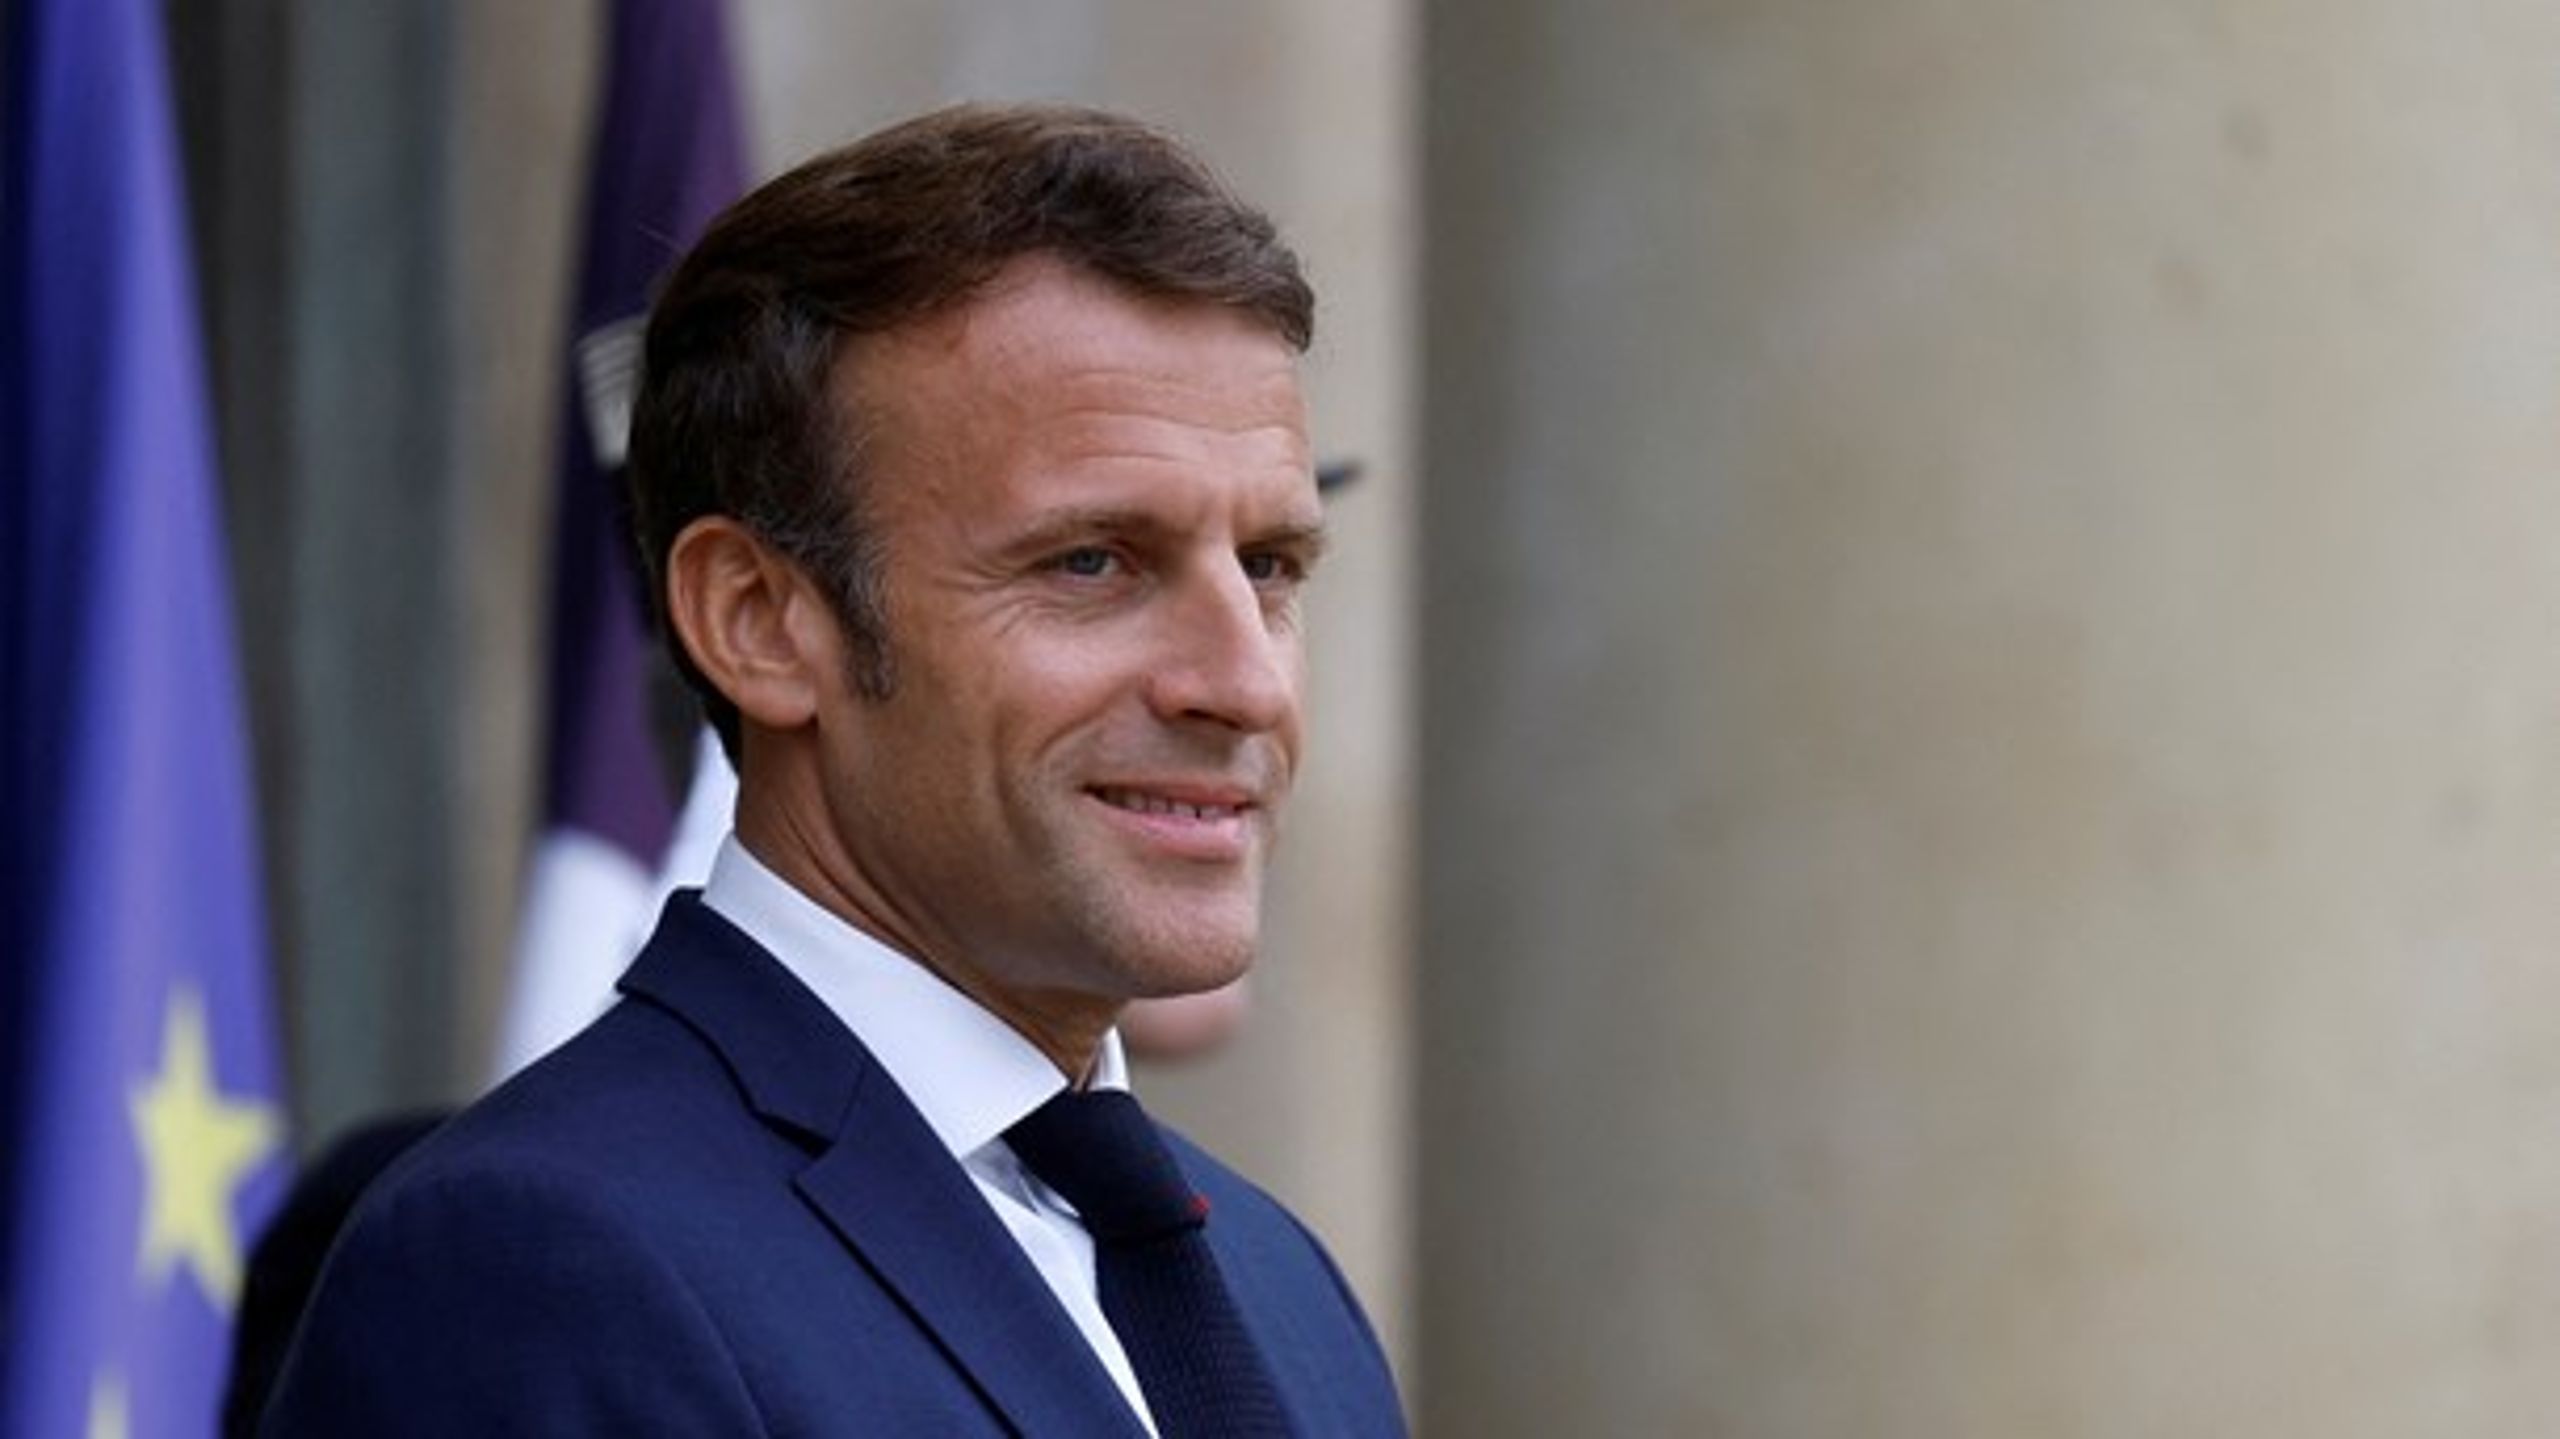 Emmanuel Macron har tatt initiativ til et nytt europeisk forum for regjeringssjefer. Det kalles foreløpig Det europeiske politiske felleskap (EPC), men både navnet og mye annet kan endre seg. Det er delte meninger om denne nye europeiske klubben.